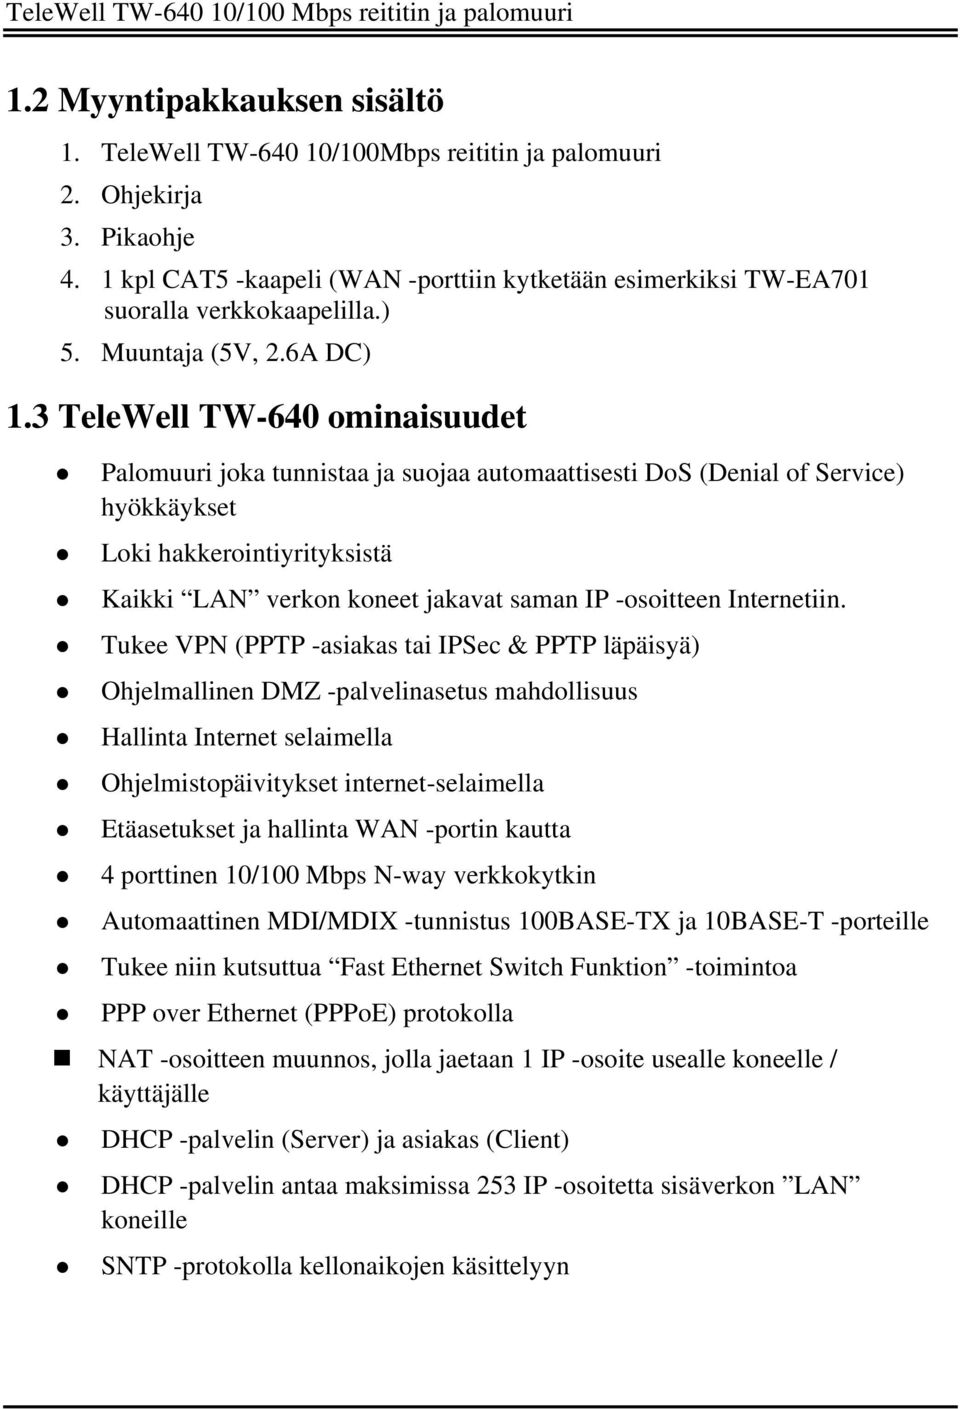 3 TeleWell TW-640 ominaisuudet Palomuuri joka tunnistaa ja suojaa automaattisesti DoS (Denial of Service) hyökkäykset Loki hakkerointiyrityksistä Kaikki LAN verkon koneet jakavat saman IP -osoitteen